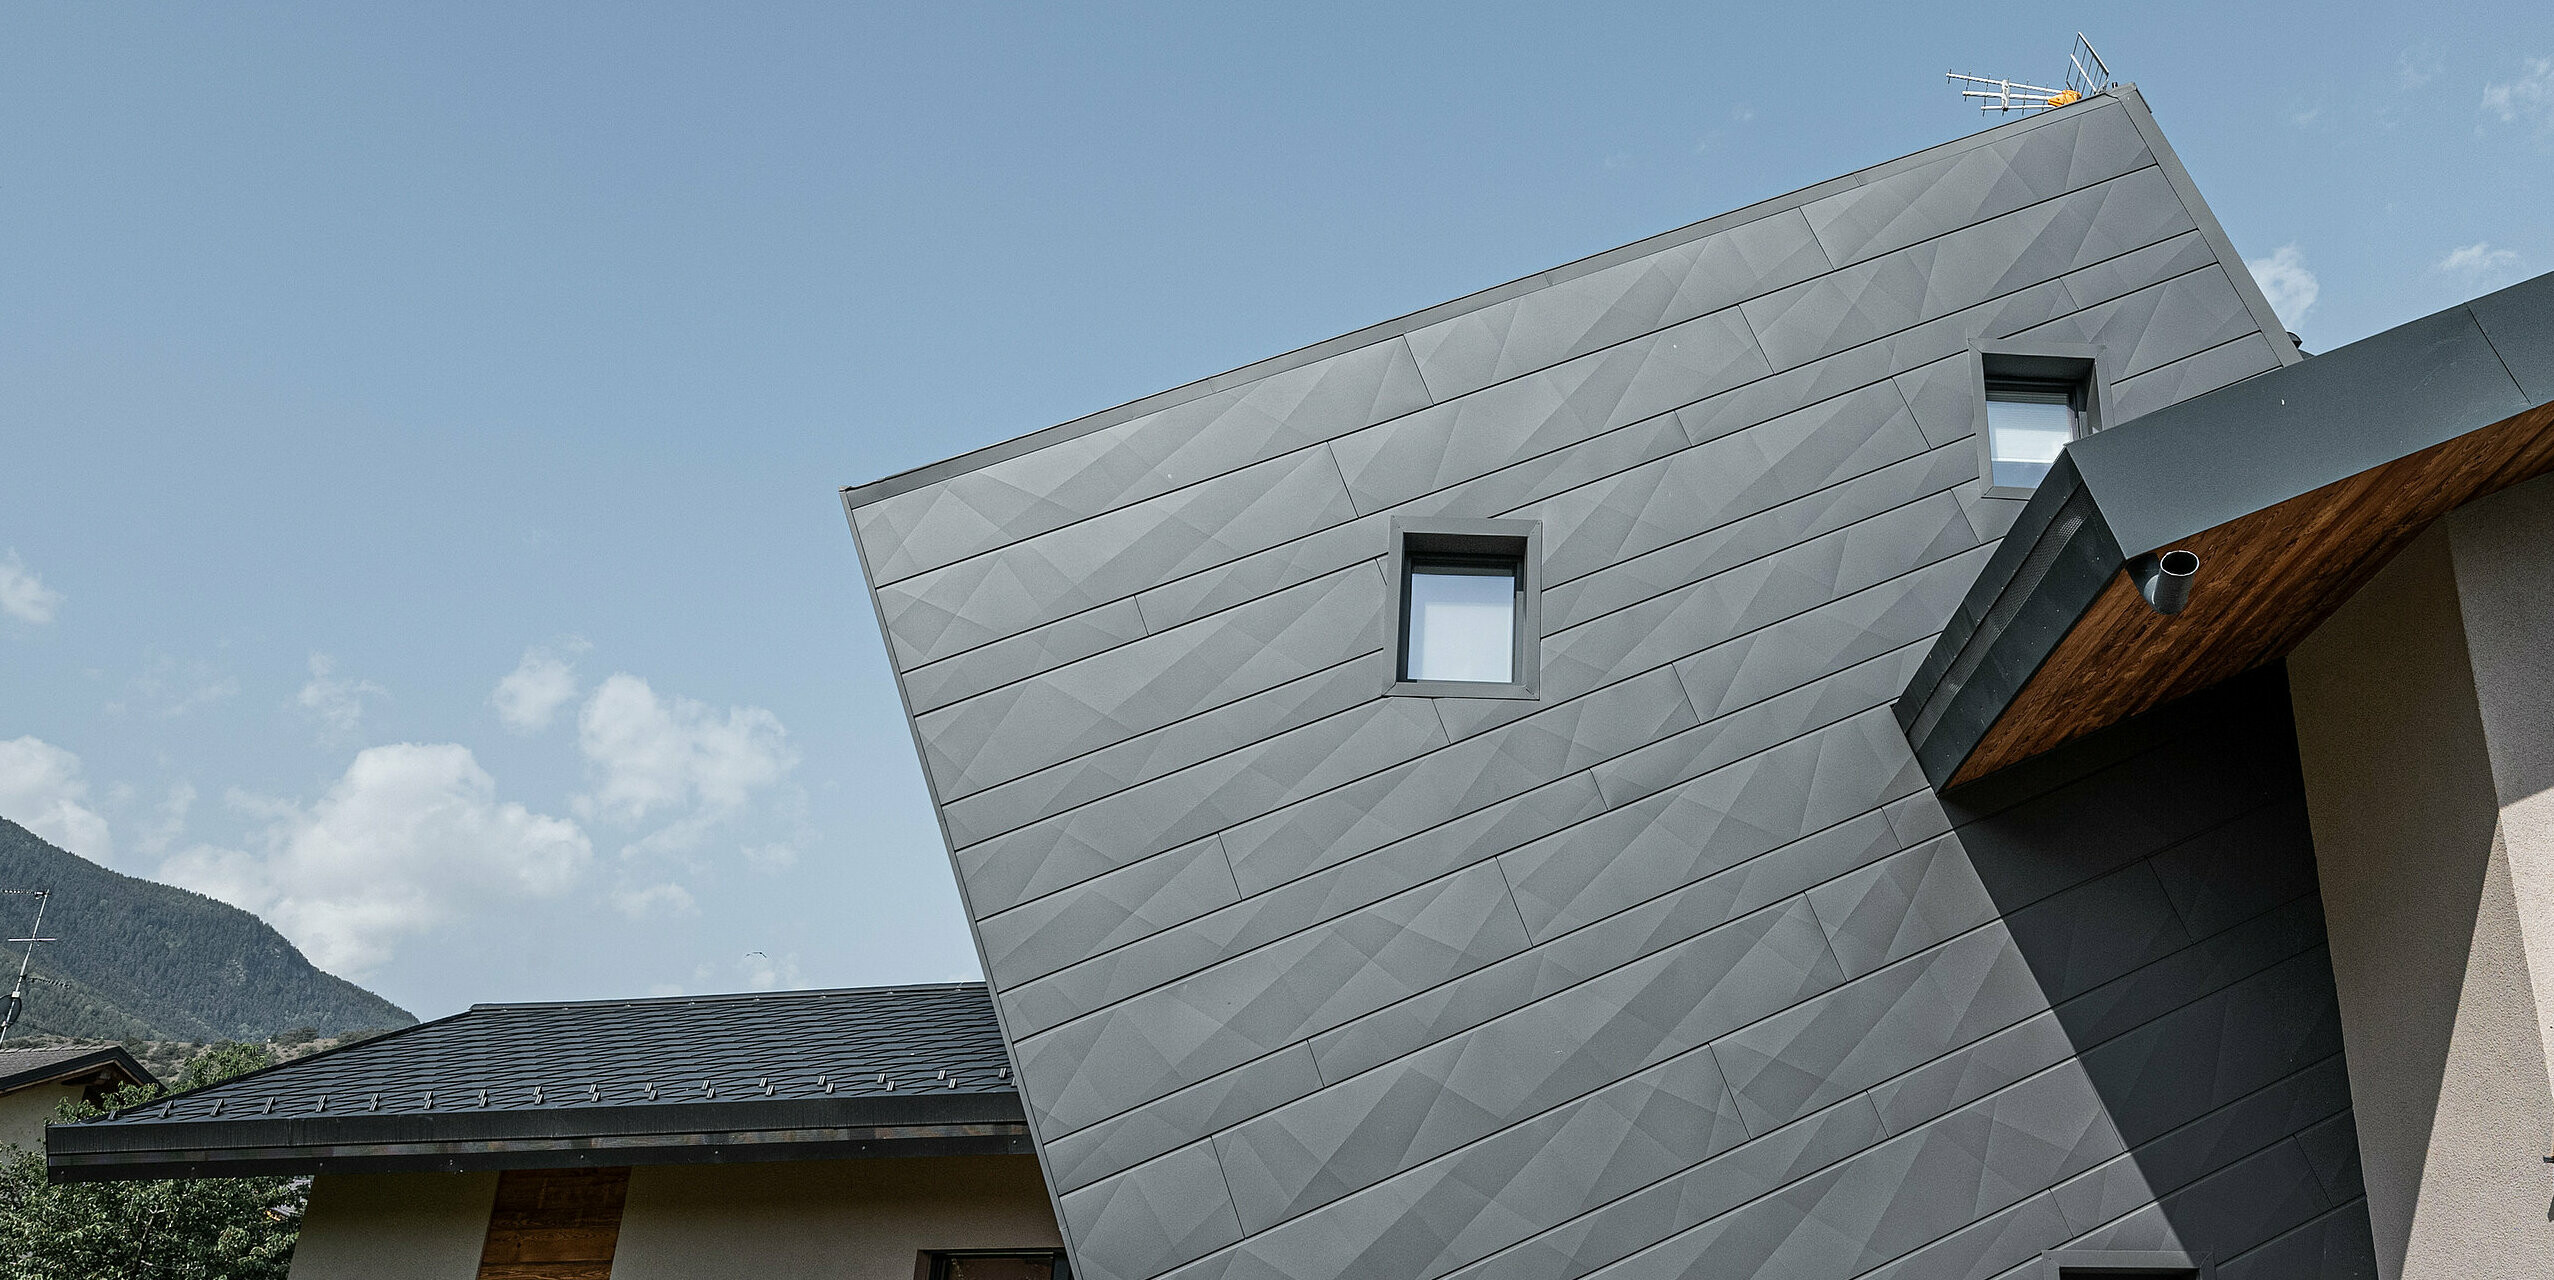 Vila Tia v talianskom Gressane má moderný dizajn fasády s obkladom PREFA Siding.X vo farbe P.10 tmavošedá. Dynamické usporiadanie panelov vytvára trojrozmerný vzhľad, ktorý je zdôraznený kontrastom s prírodnými drevenými prvkami a okolitou krajinou. Toto inovatívne špeciálne riešenie šikmých fasádnych panelov Siding.X je symbolom moderného a odolného dizajnu.